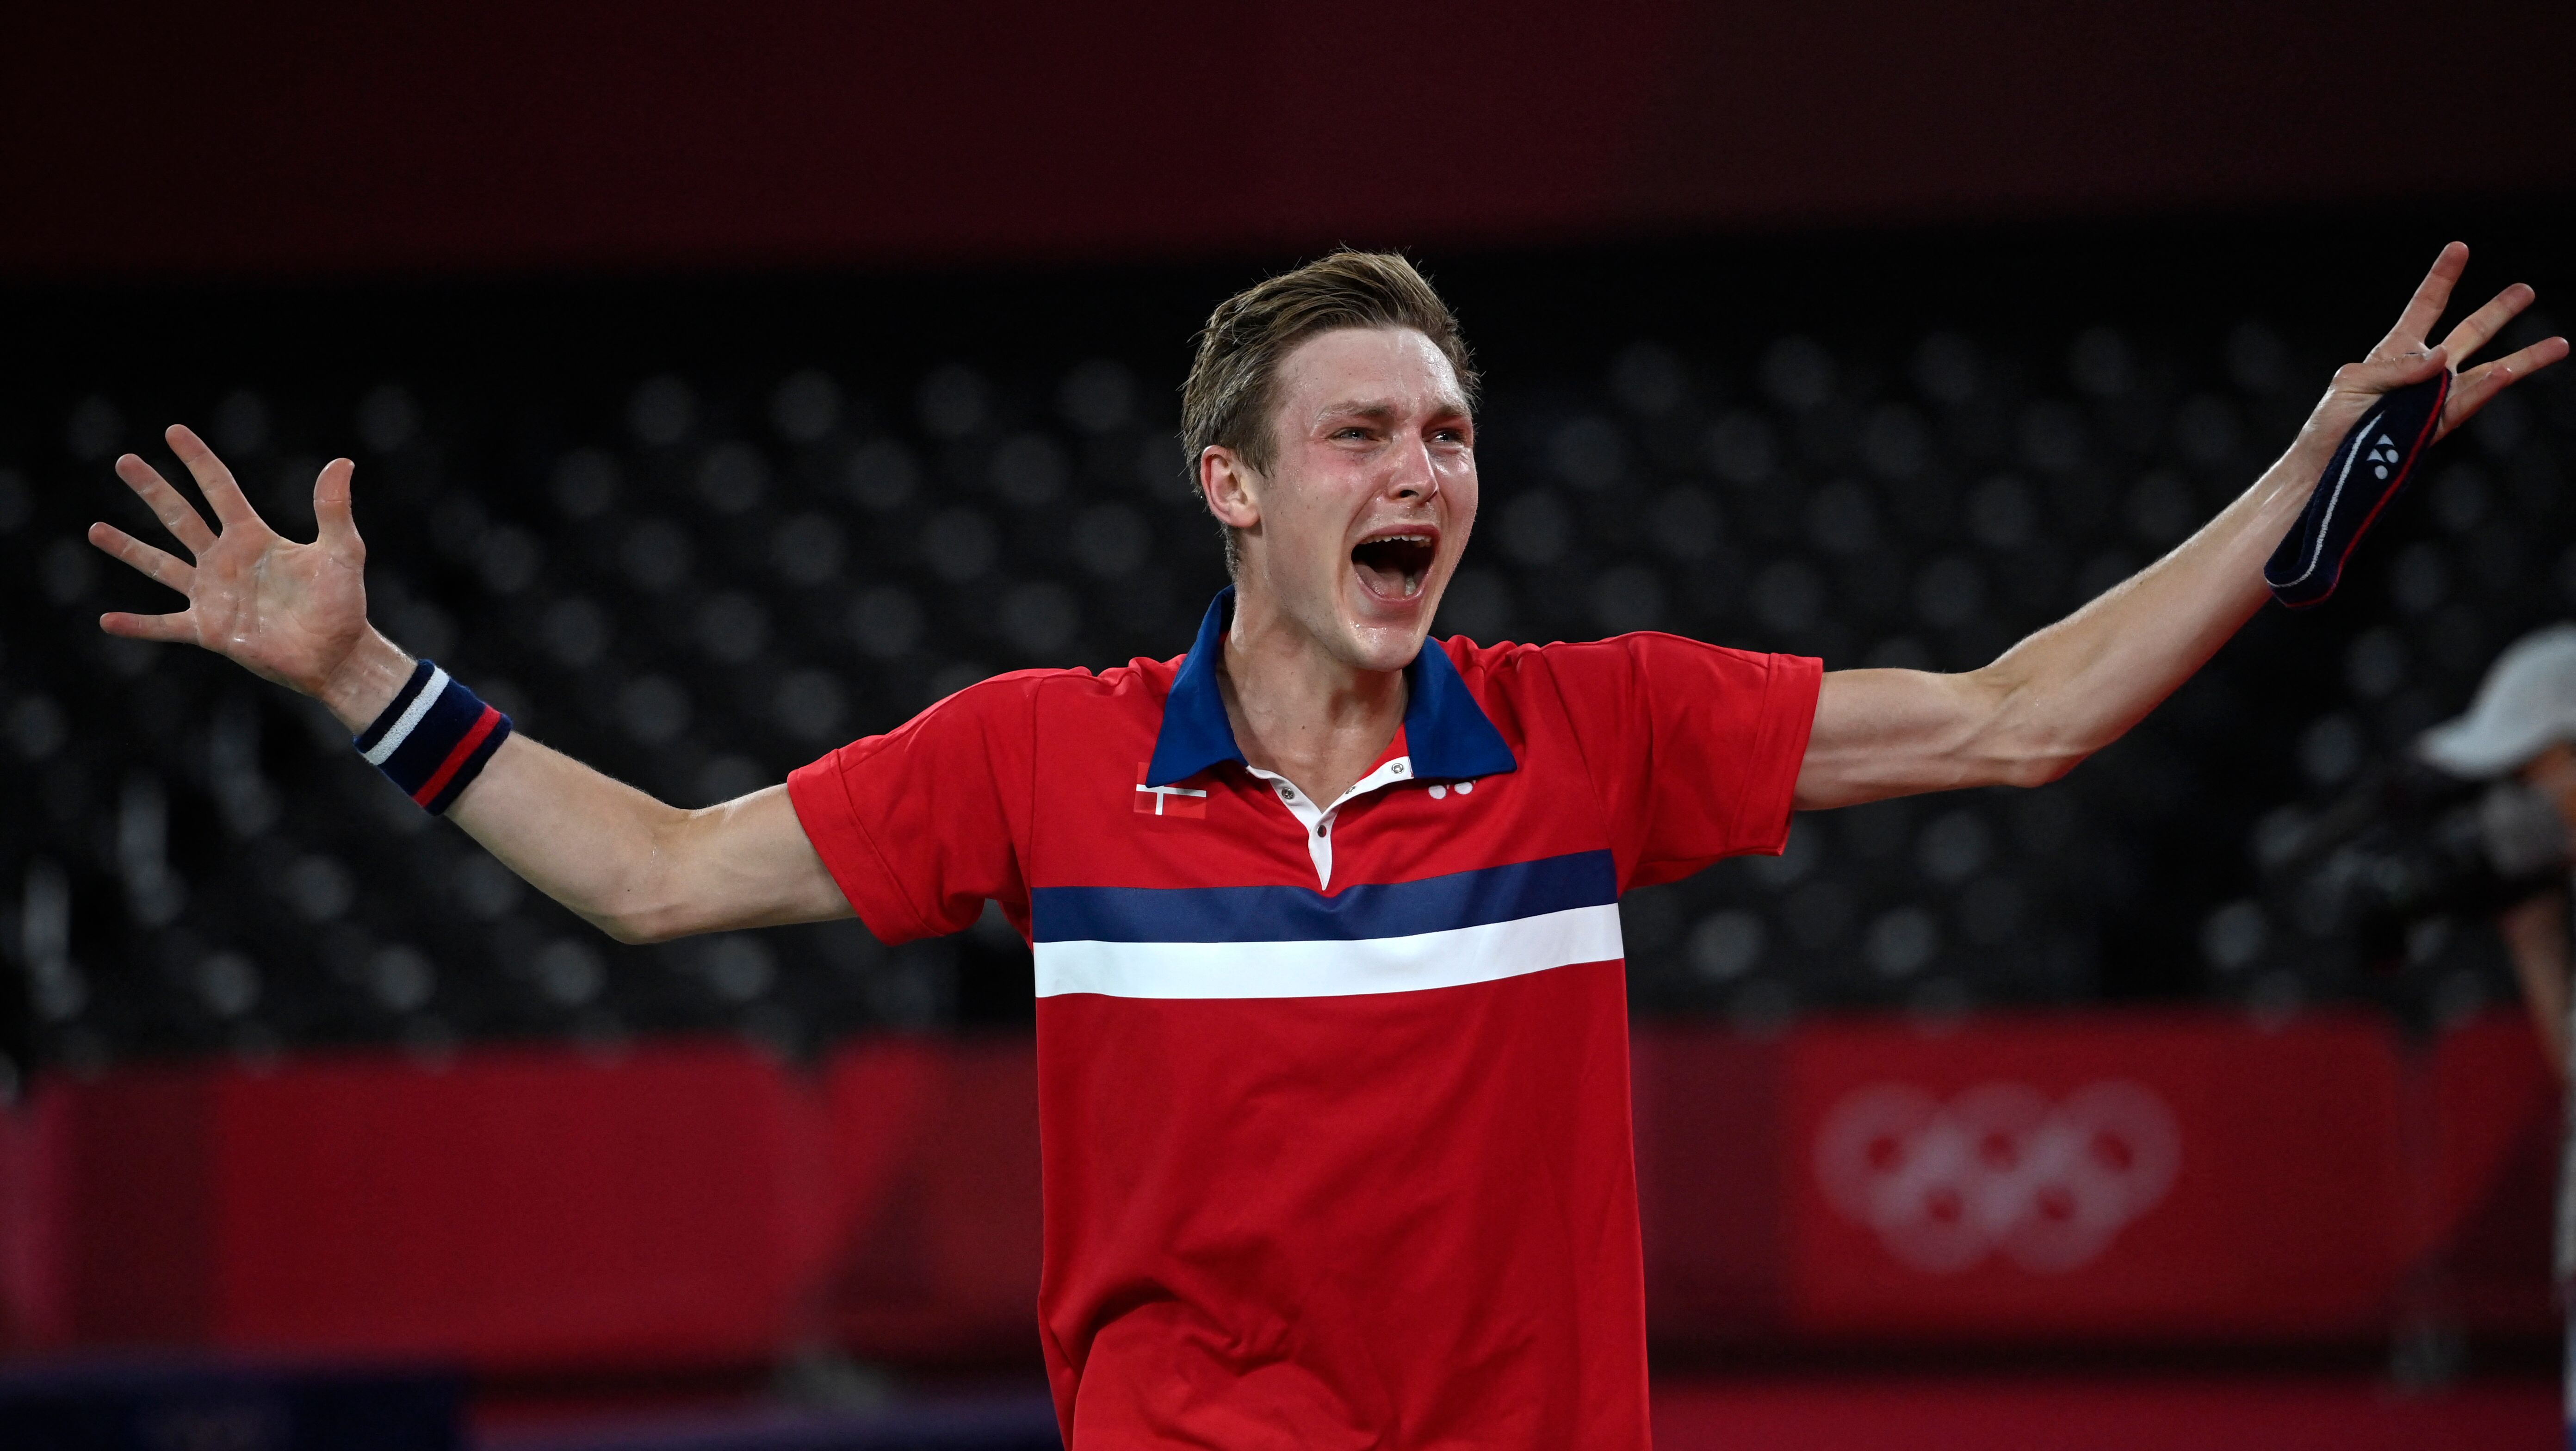 El danés Viktor Axelsen celebra después de haber batido al chino Chen Long en la final masculina de bádminton de los Juegos Olímpicos de Tokio. Foto Prensa Libre: AFP.